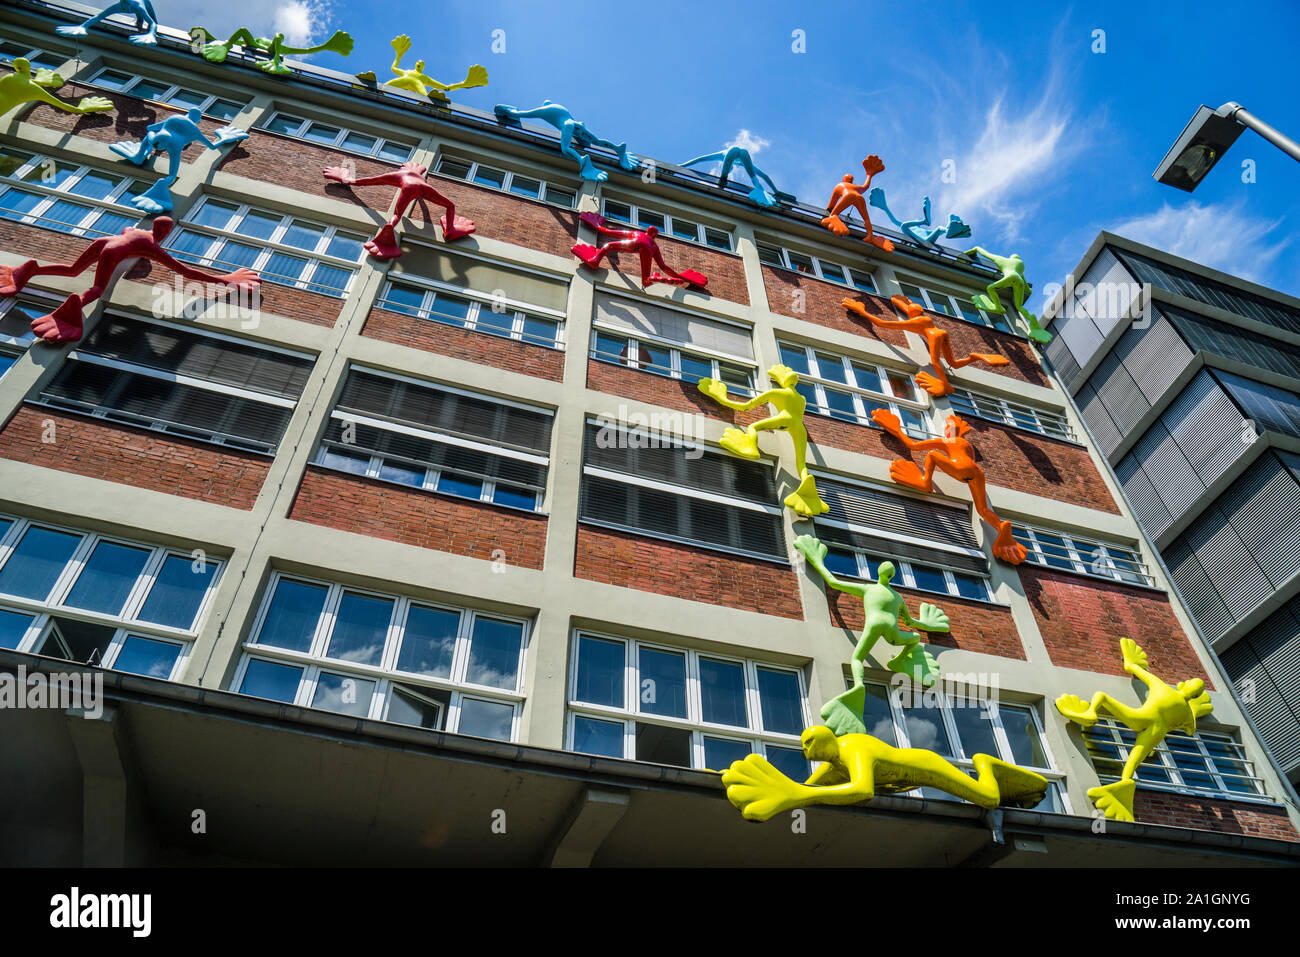 24 klettern Flossi - Skulpturen in den Farben Gelb, Rot, Blau, Grün und  Blau durch die Stuttgarter Künstlerin rosalie am ehemaligen Roggendorf  Lager an julo Stockfotografie - Alamy